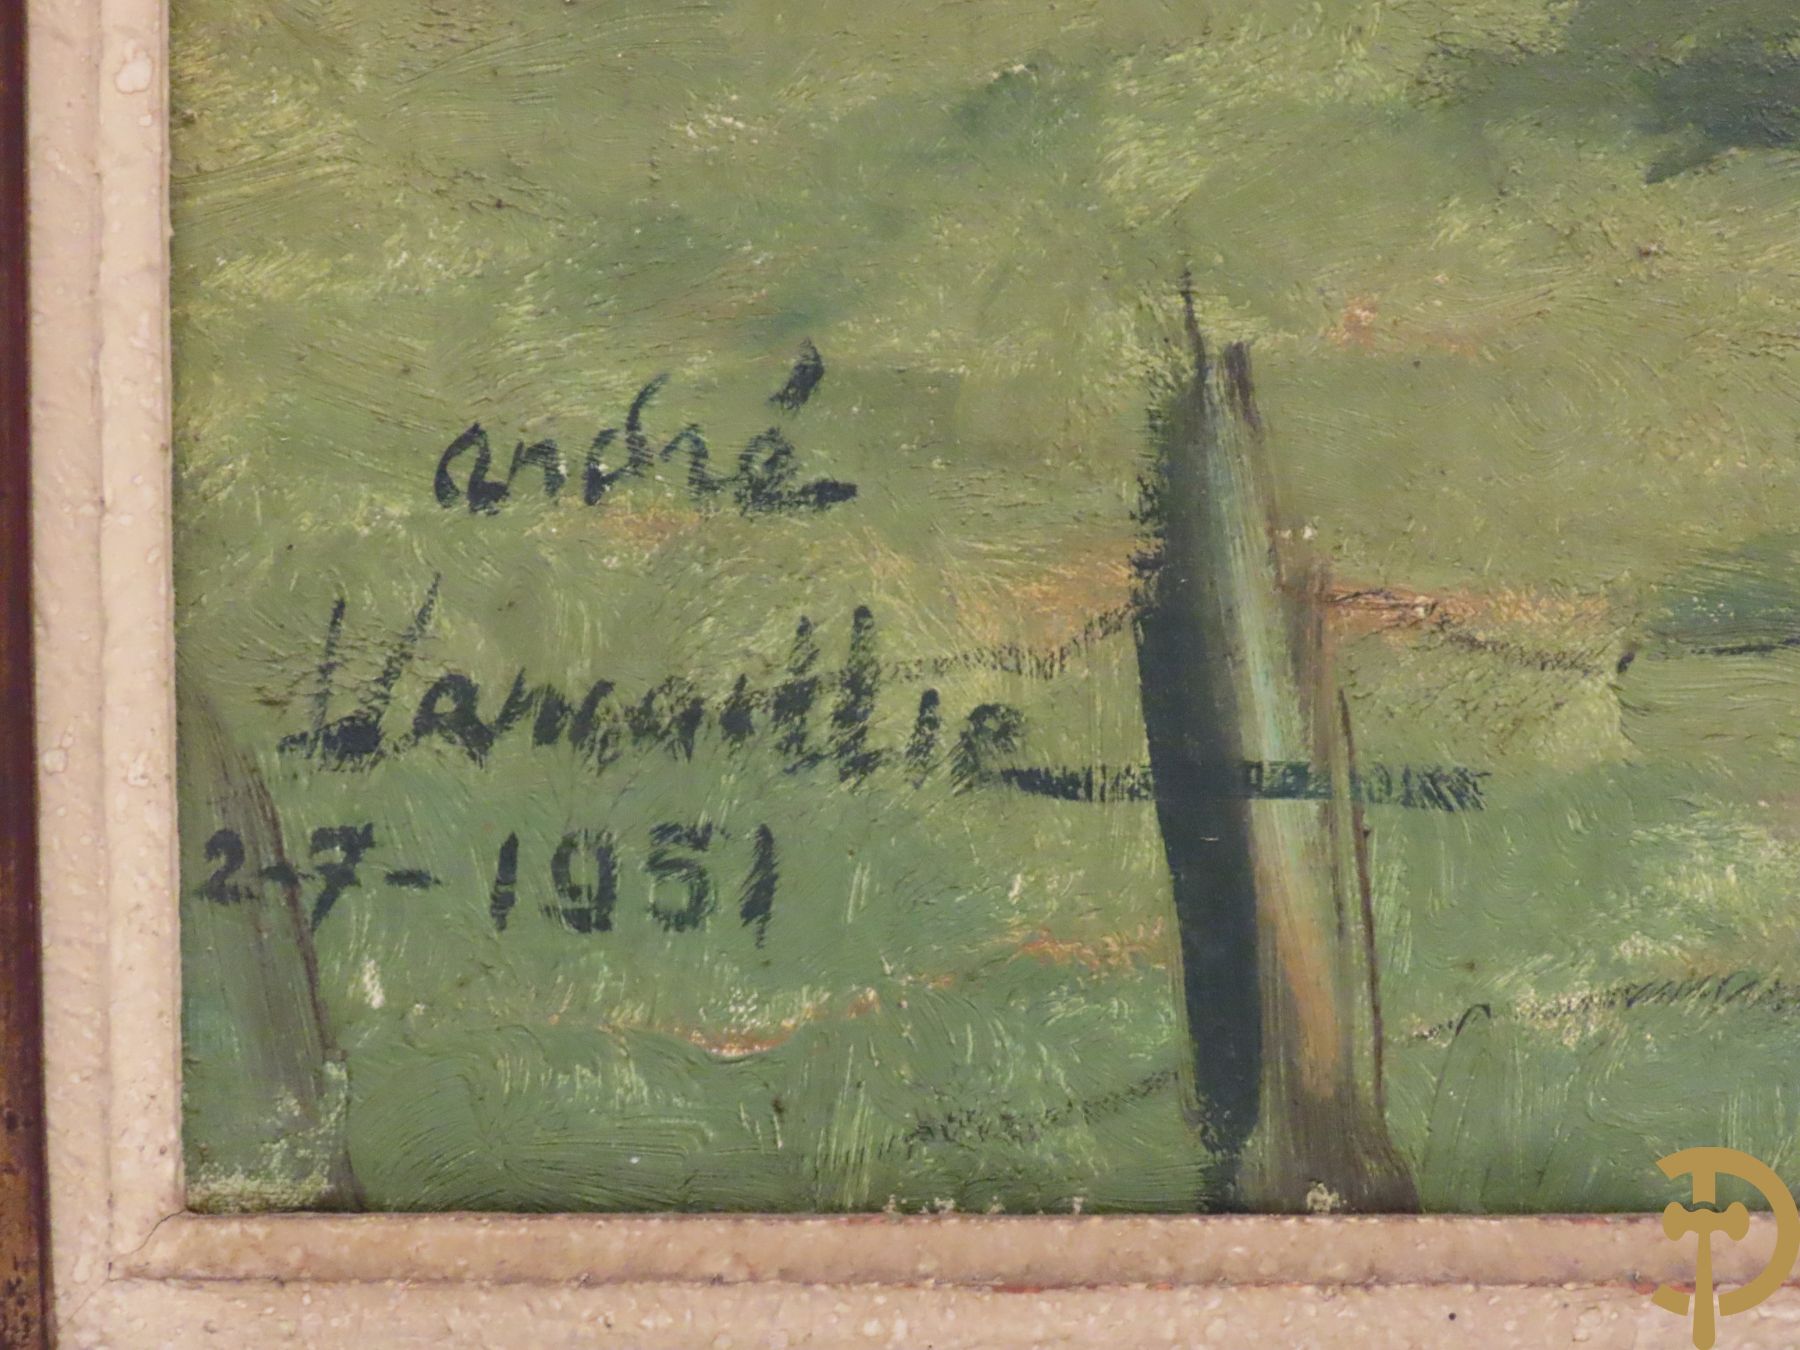 VANCOILLIE André get. 2/7/1951 